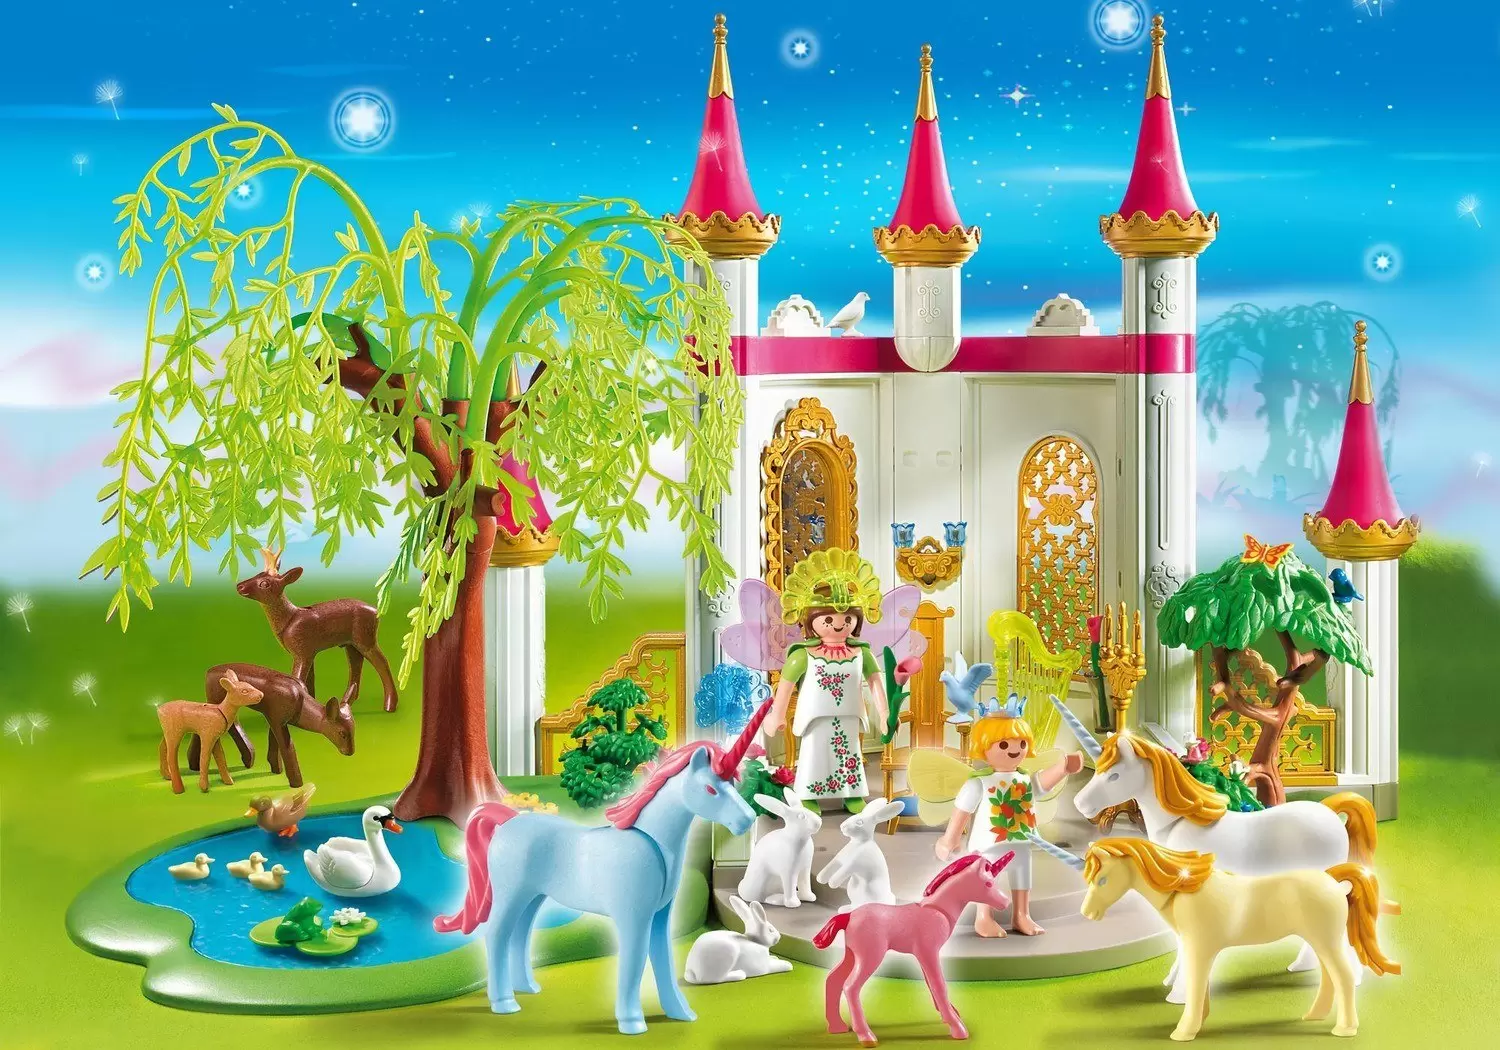 Playmobil 4148 CompactSet Jardin de fées avec licorne - Playmobil